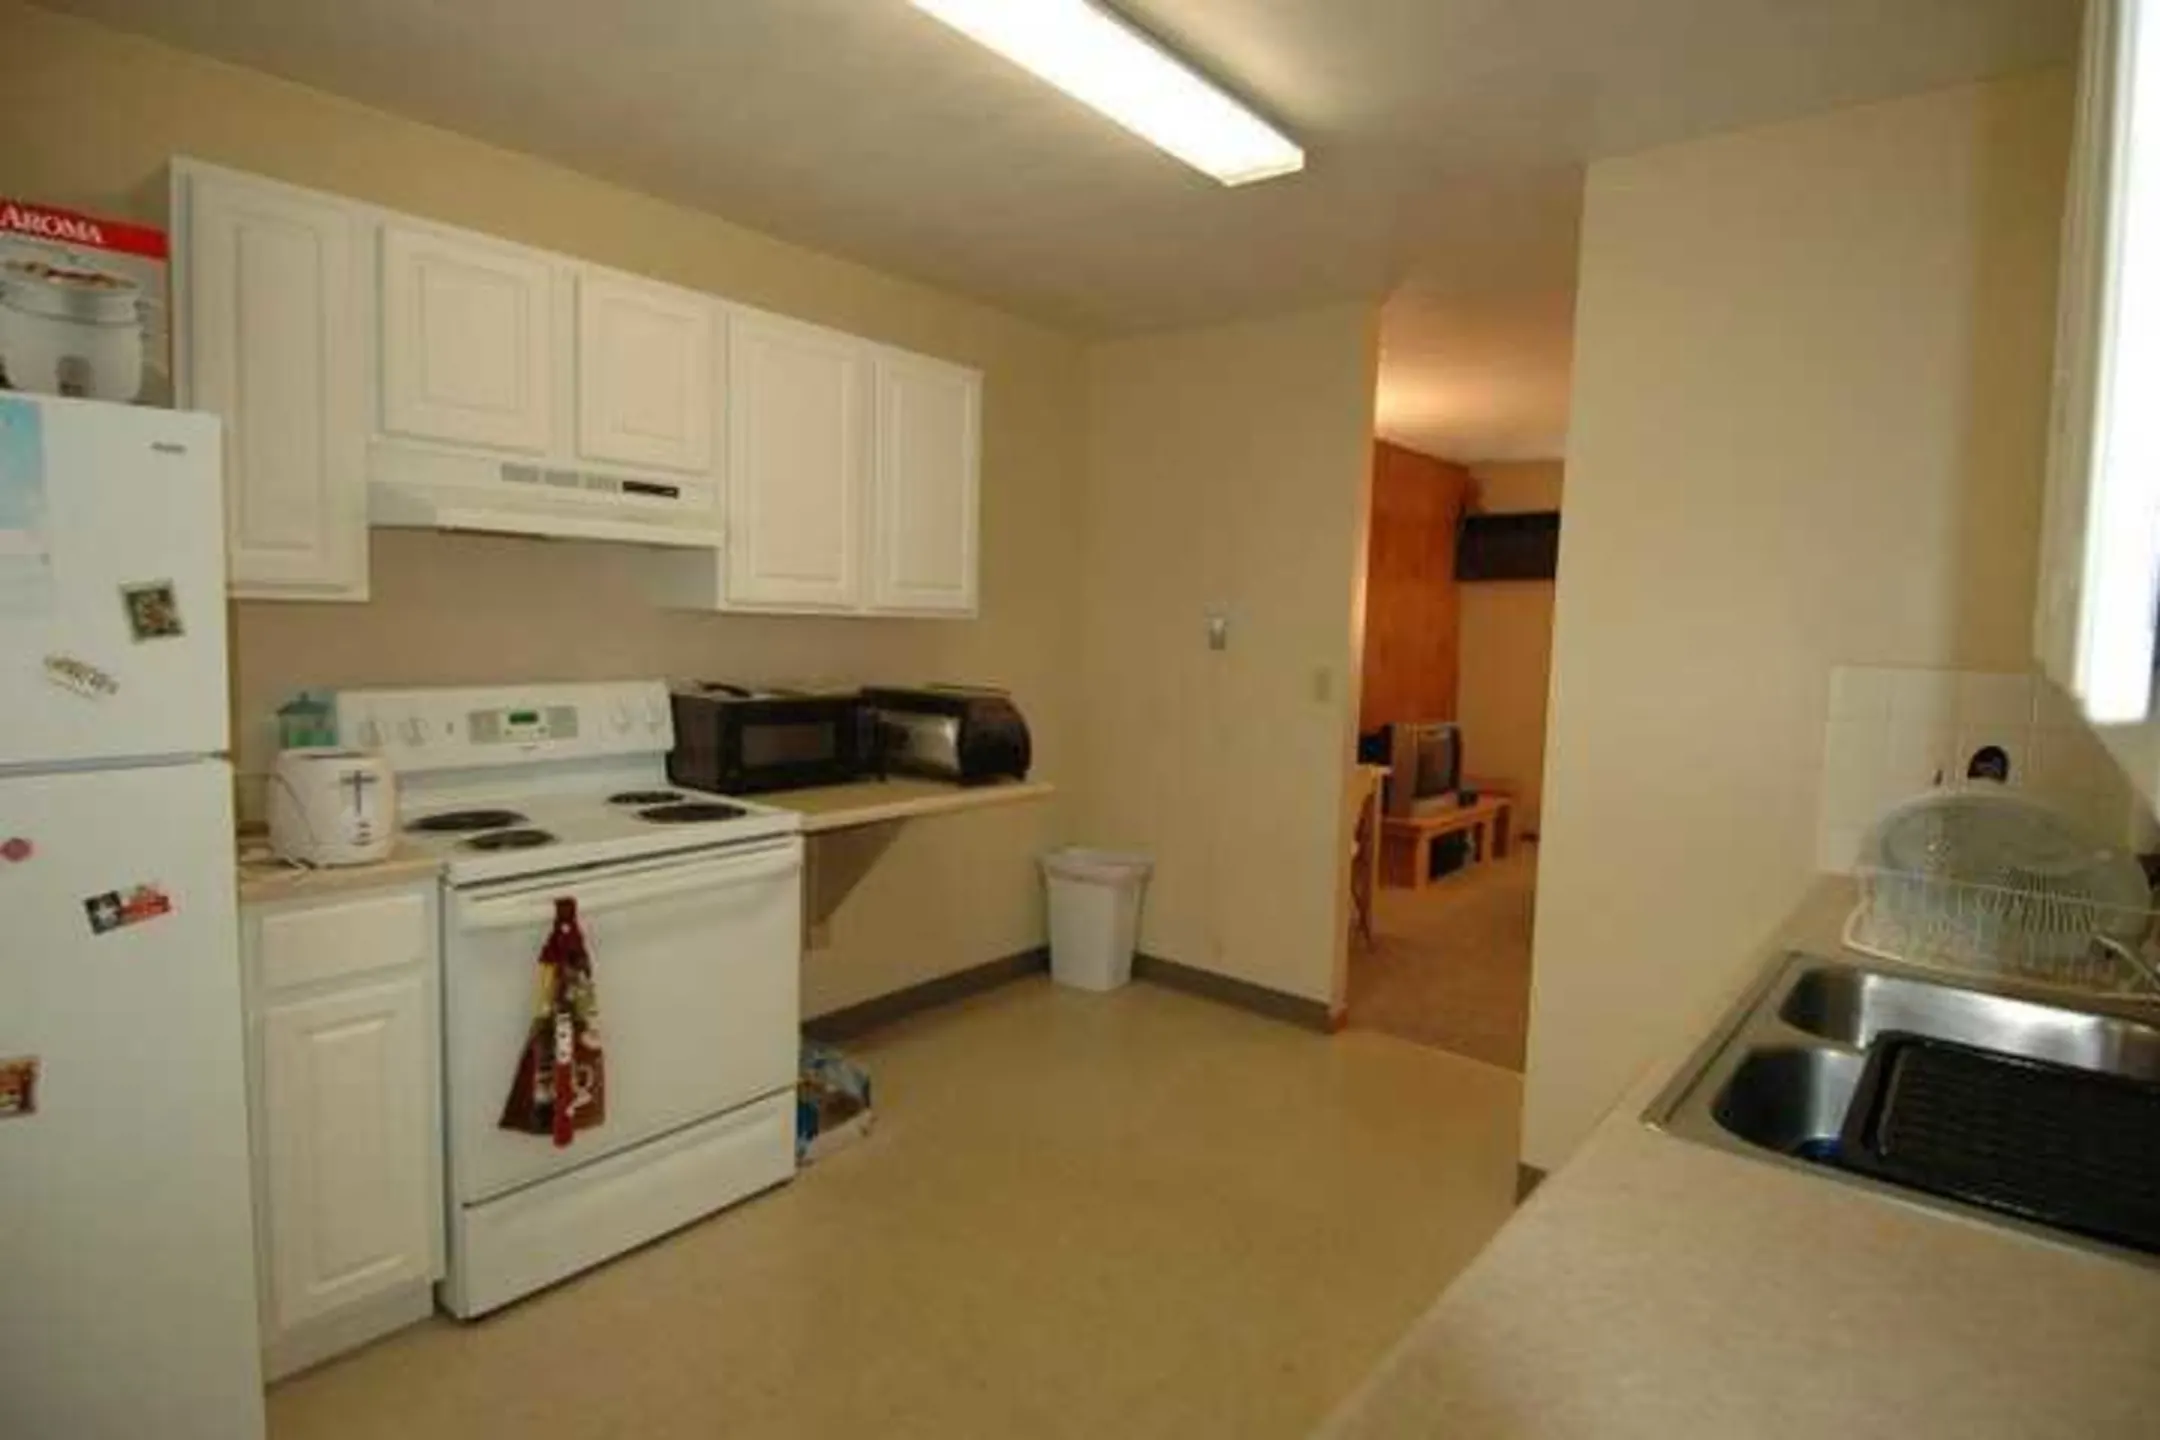 Kitchen - Crestview Apartments - West Lafayette, IN